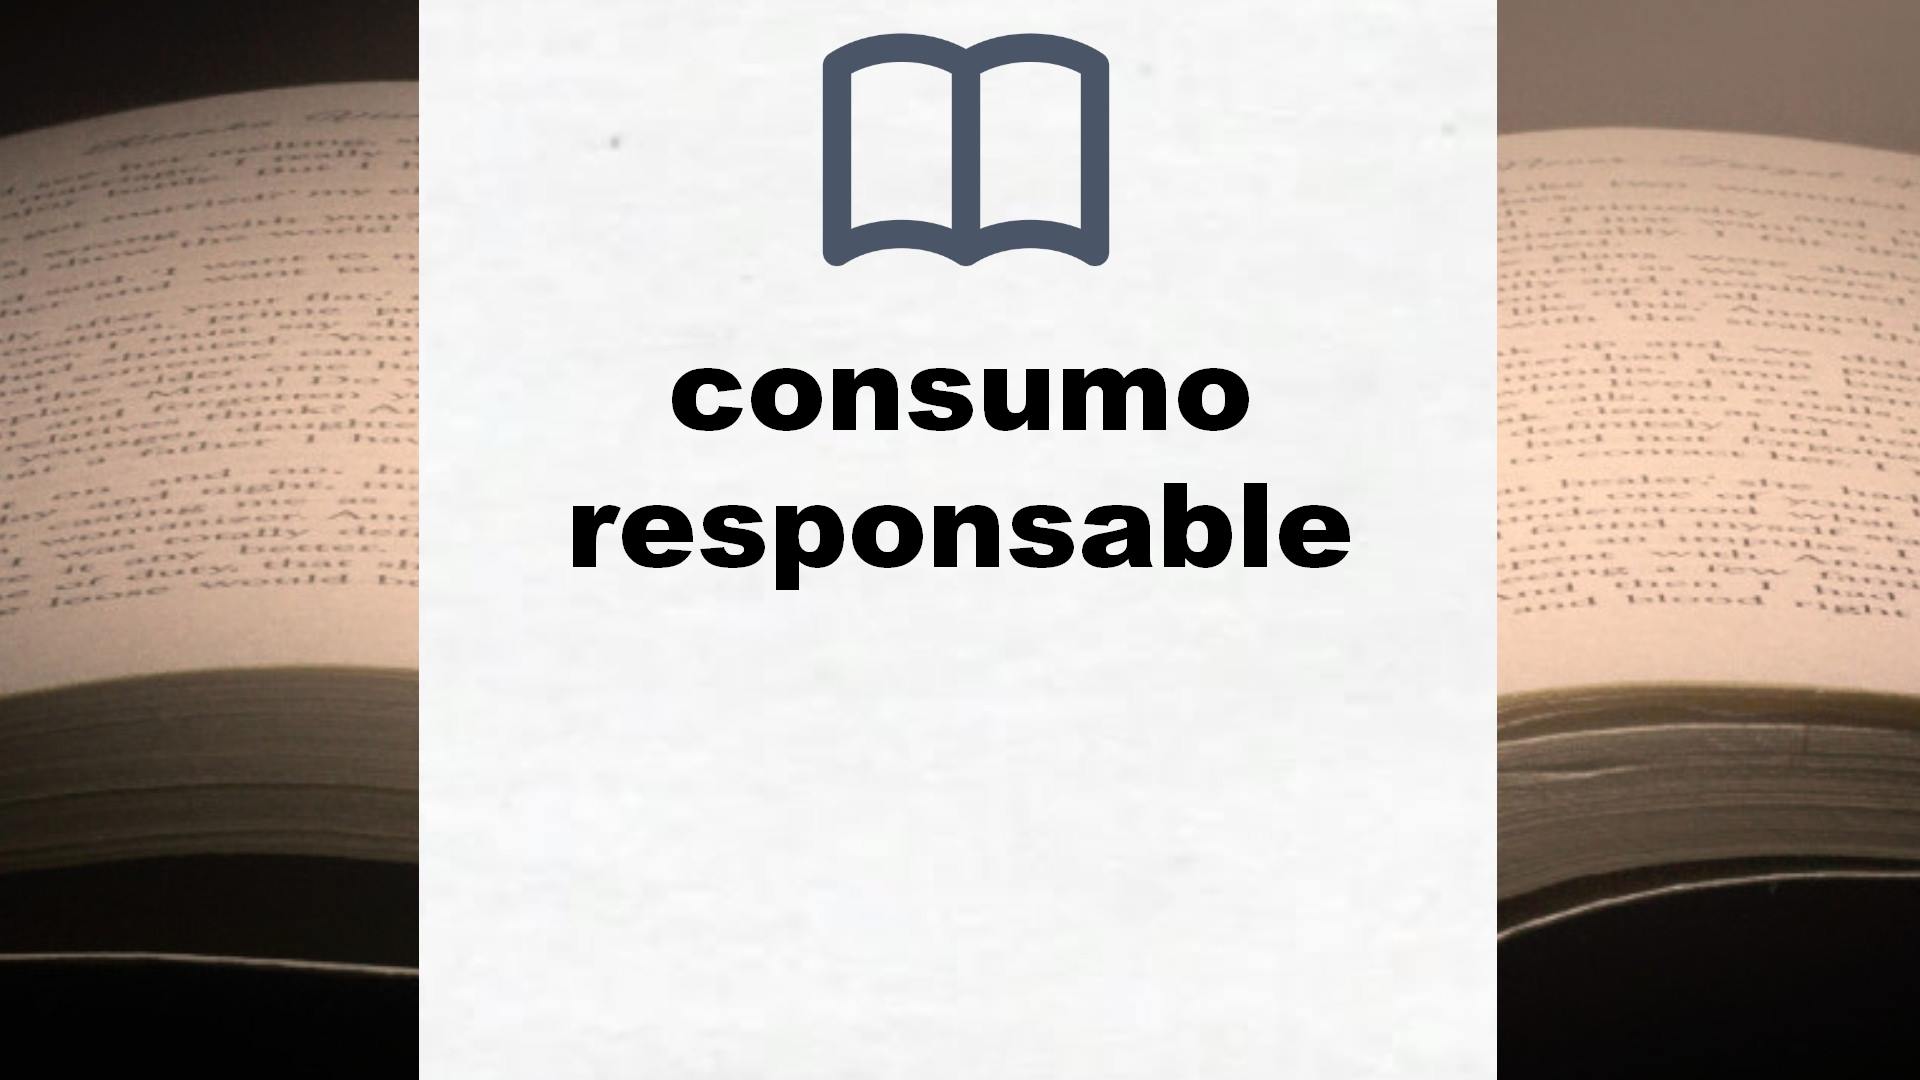 Libros sobre consumo responsable